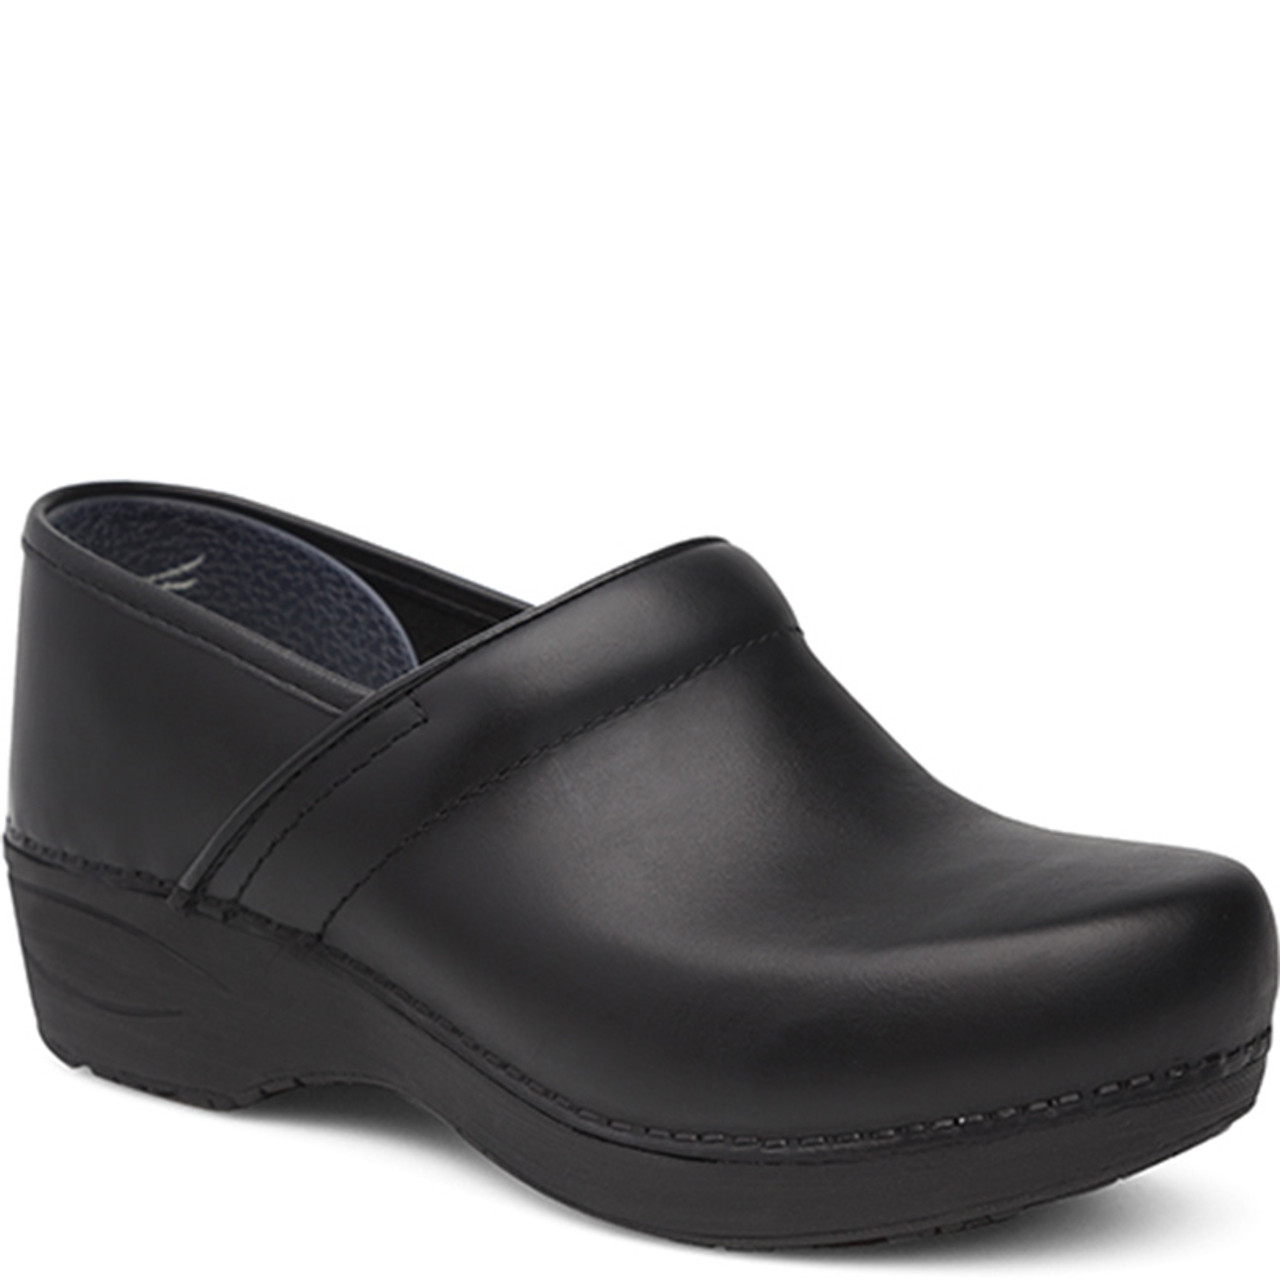 Dansko Men's Wide Shoes